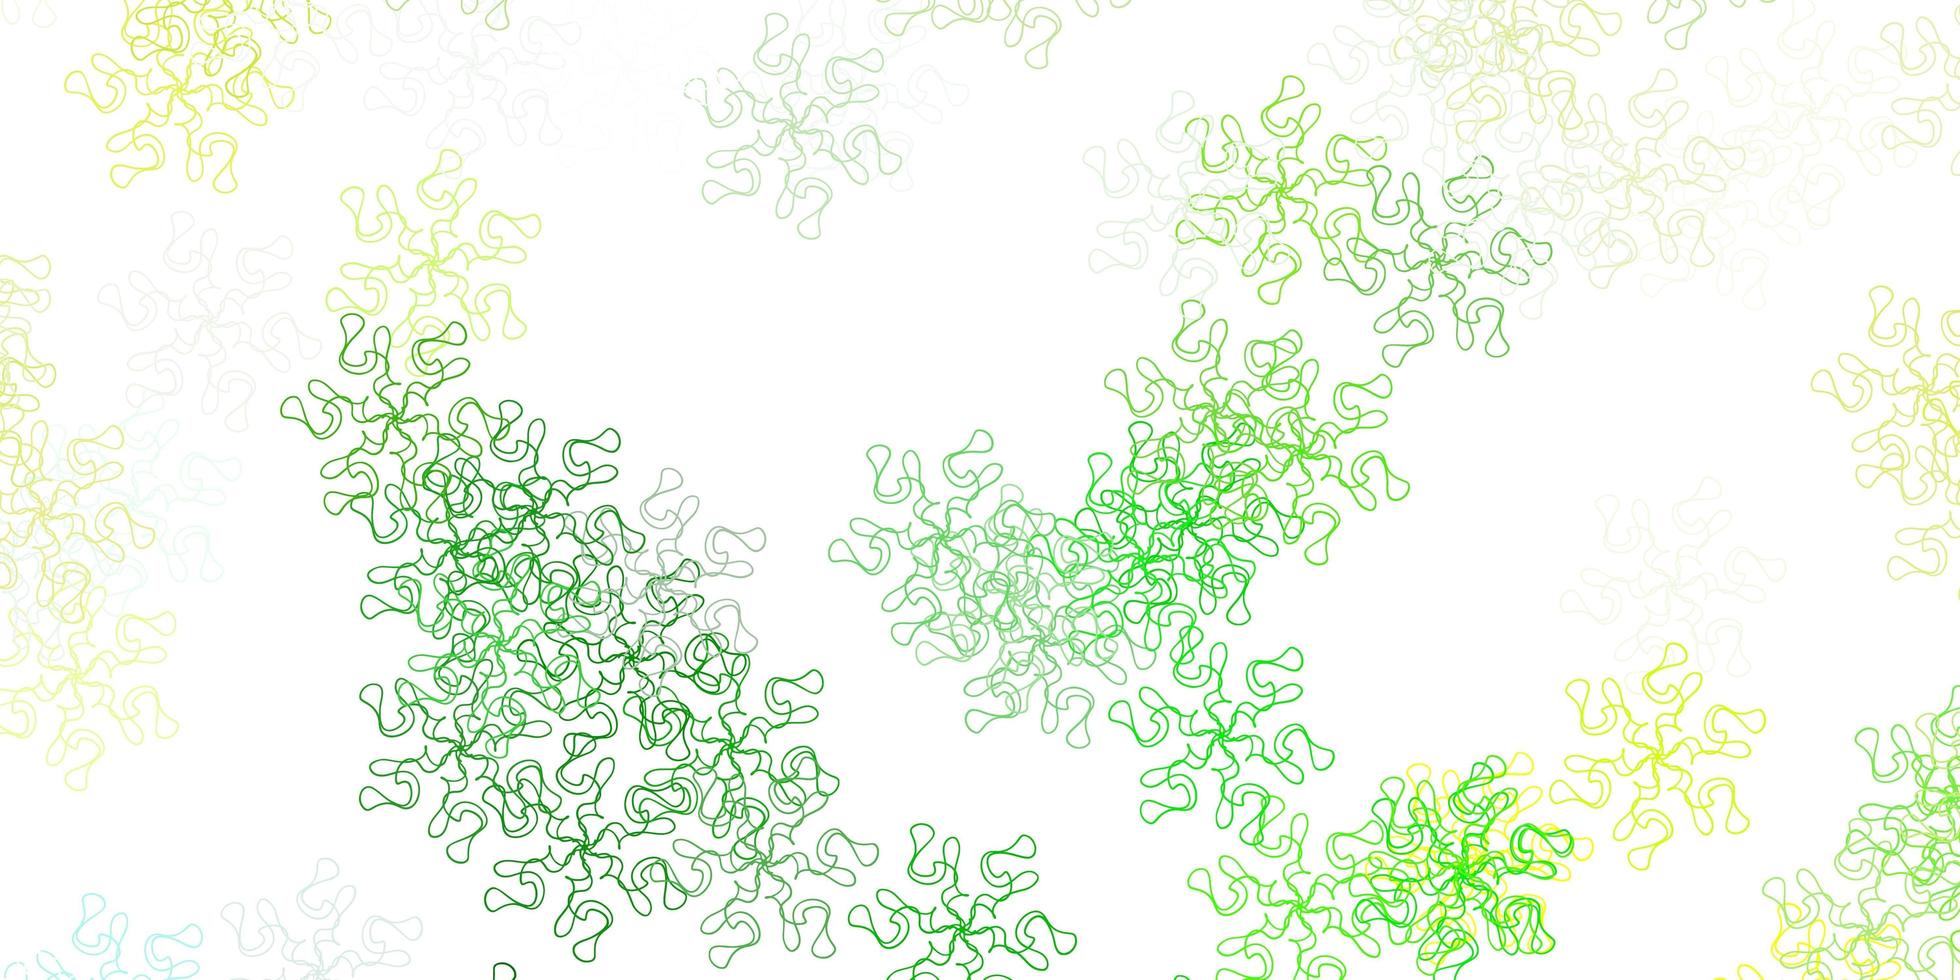 modello doodle vettoriale verde chiaro, giallo con fiori.